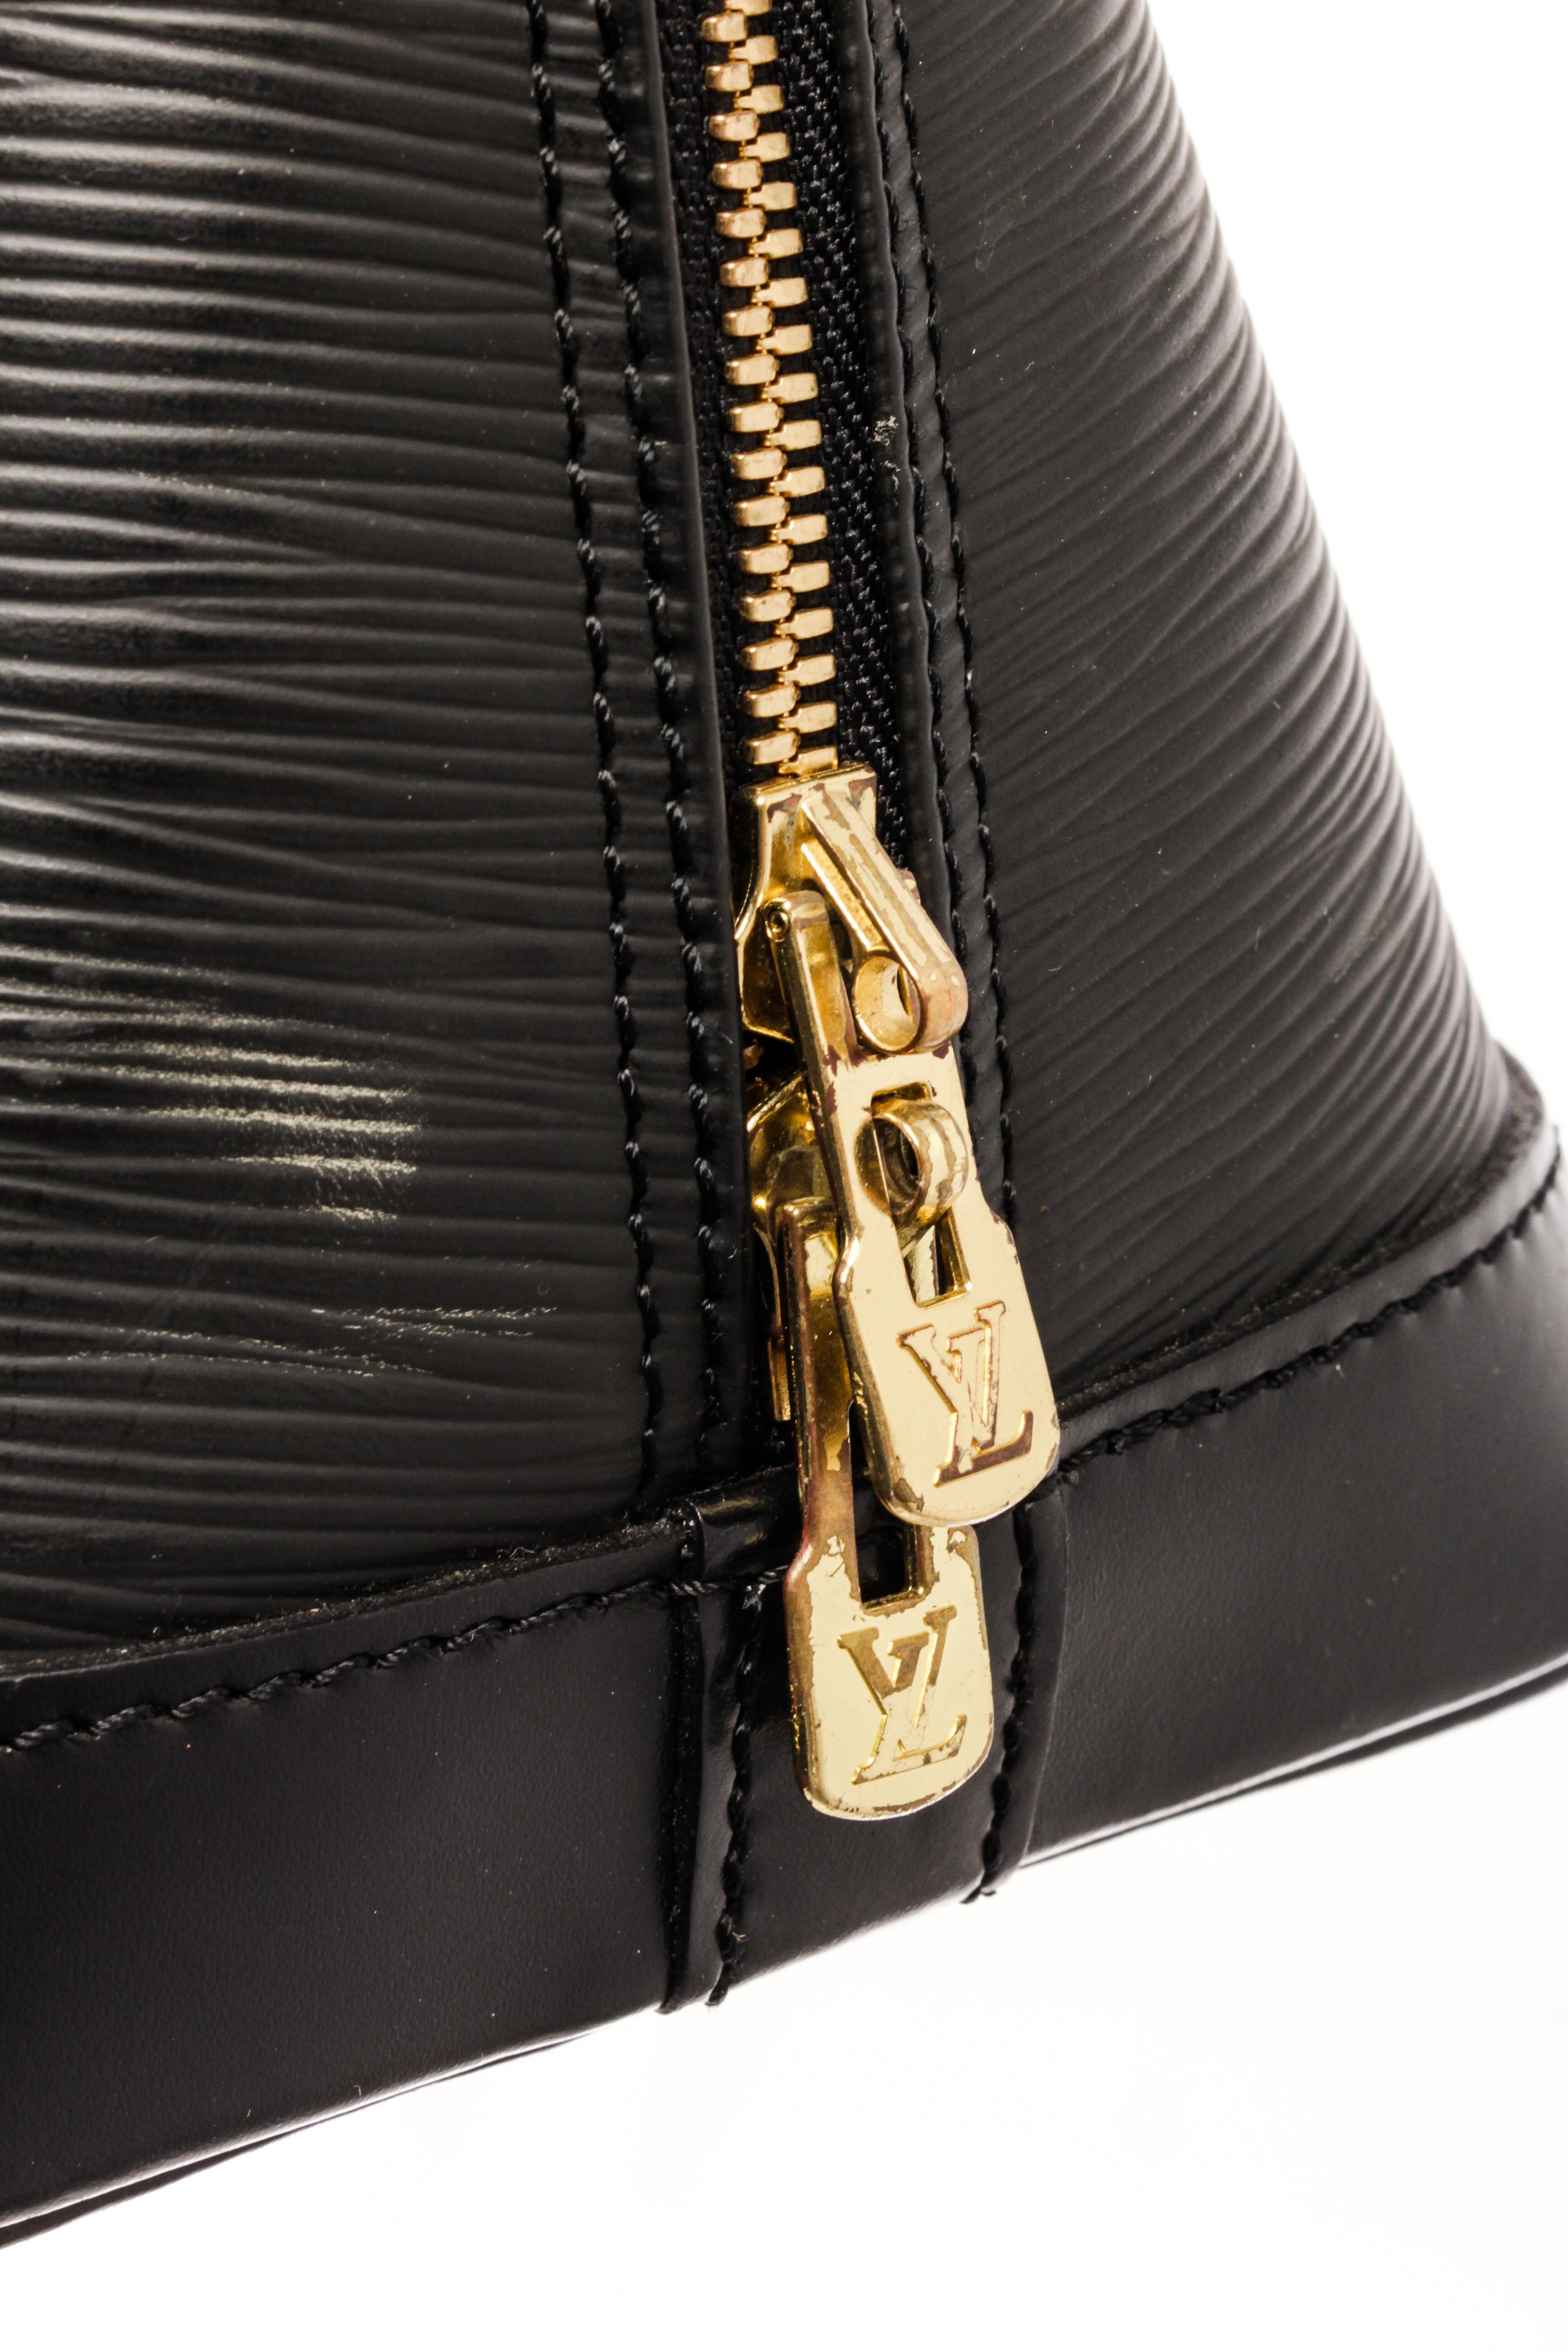 Women's Louis Vuitton Black Epi Leather Alma Satchel Bag For Sale